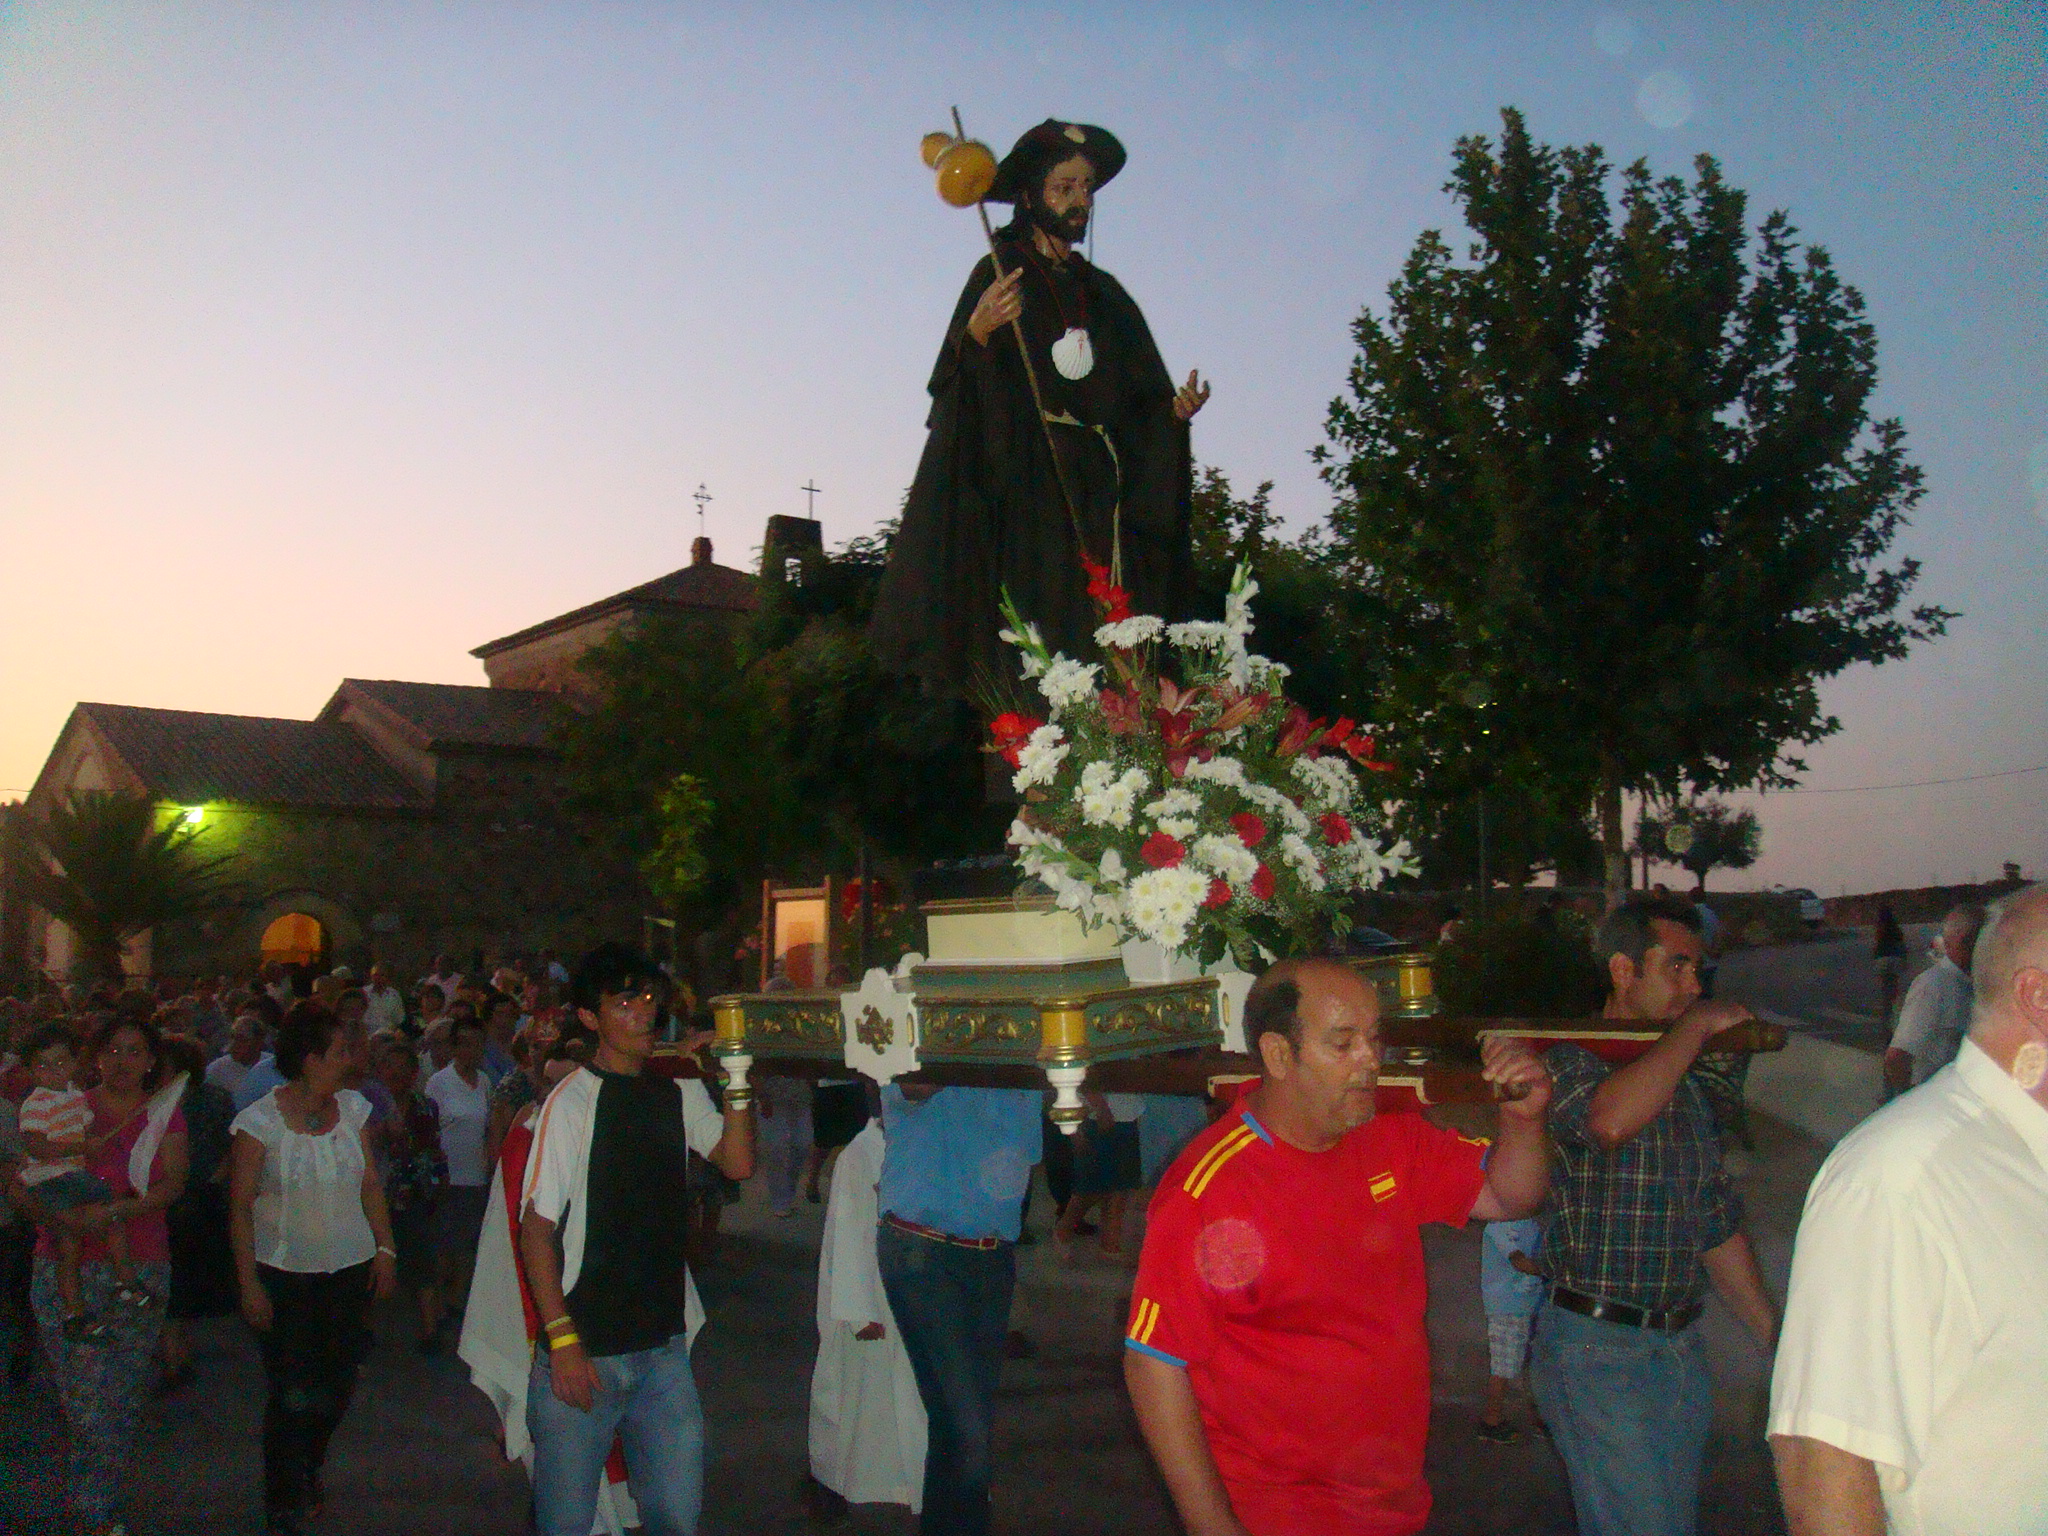 Santiago peregrino salió en procesión arropado por centenares de devotos